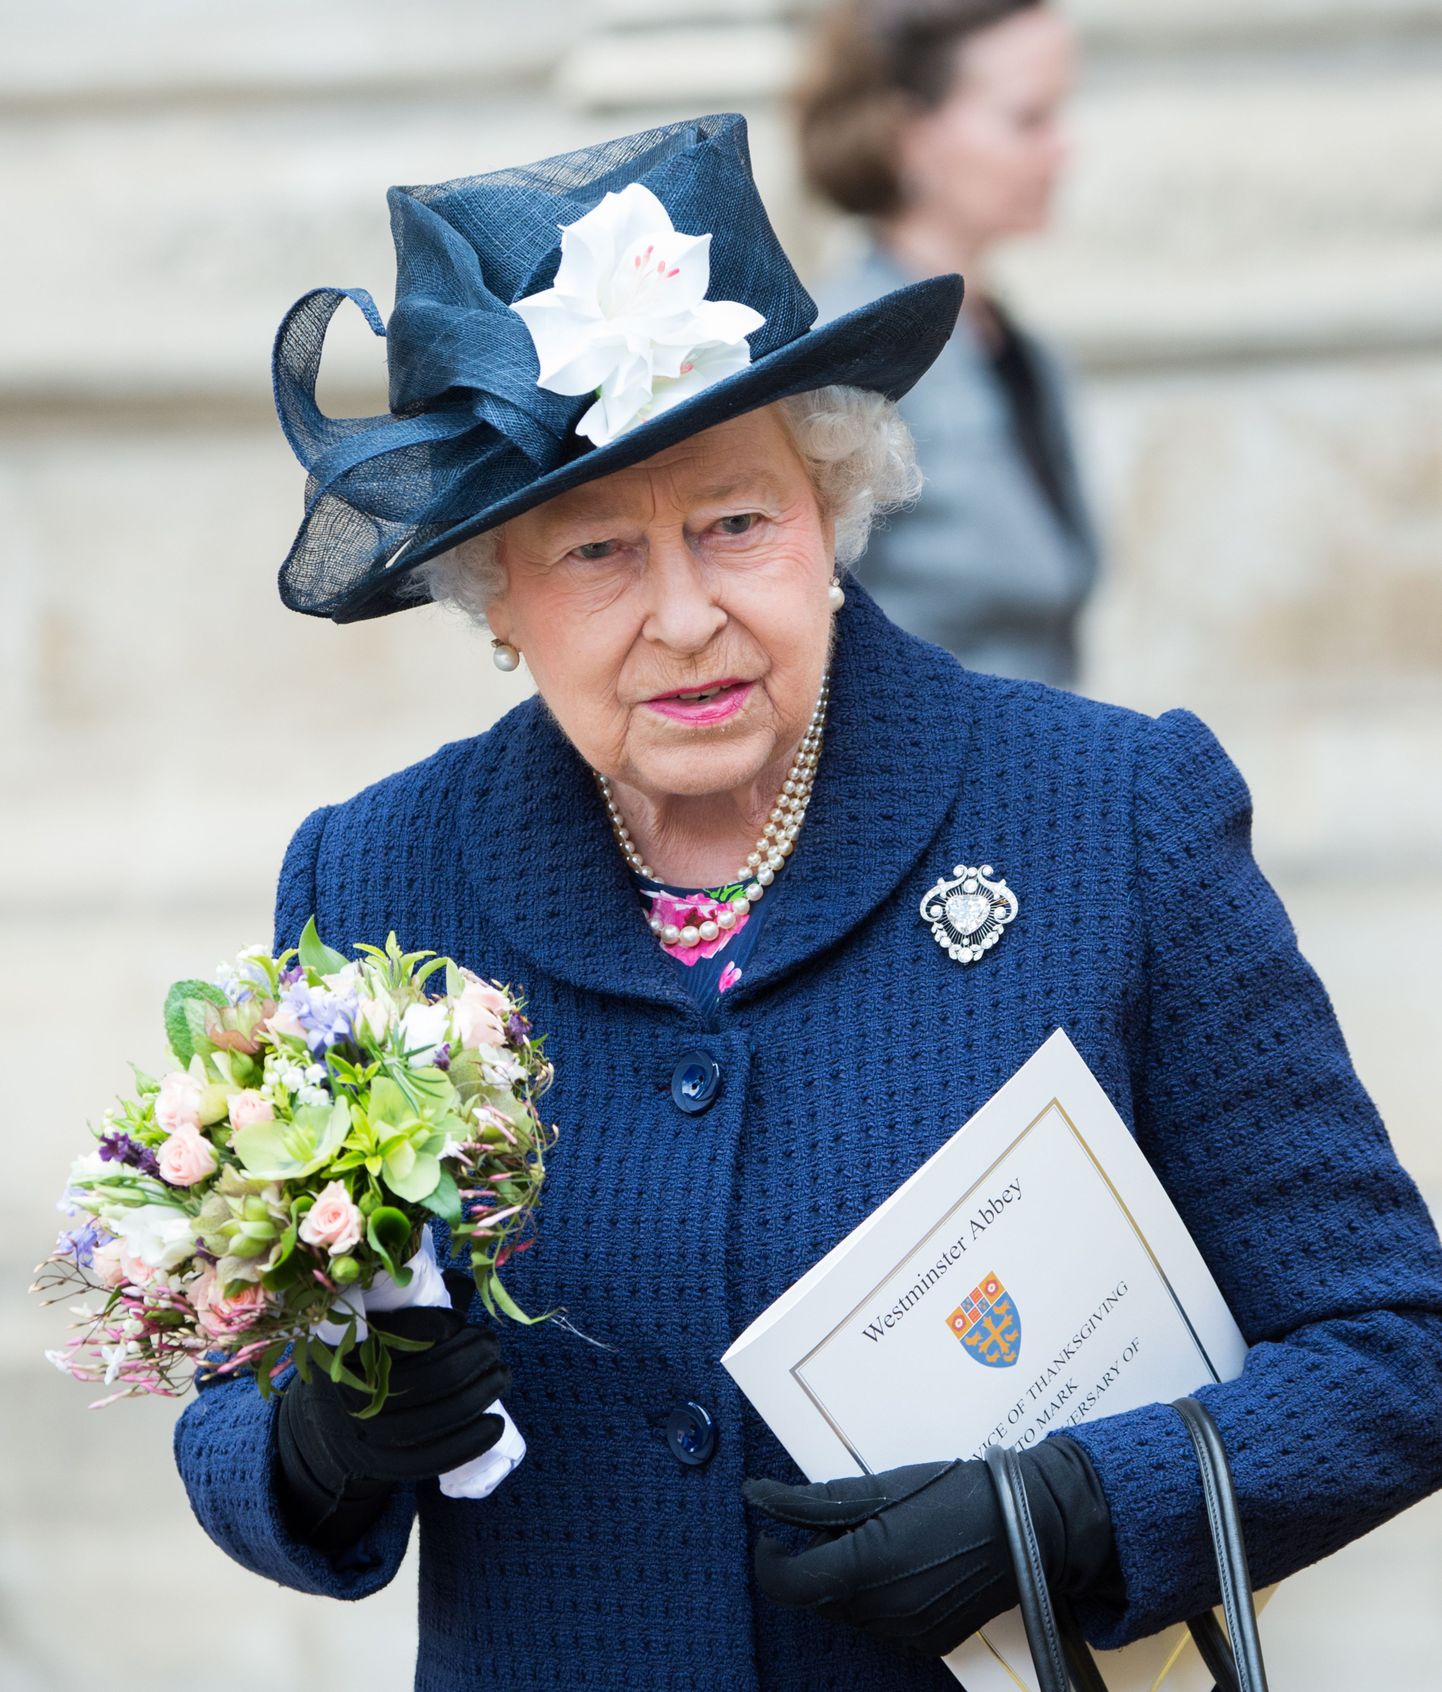 Kuninganna Elizabeth II osales Teises maailmasõjas saavutatud võidu 70. aastapäeva ürituste viimasel päeval Londoni Westminster Abbey's tänujumalateenistusel.